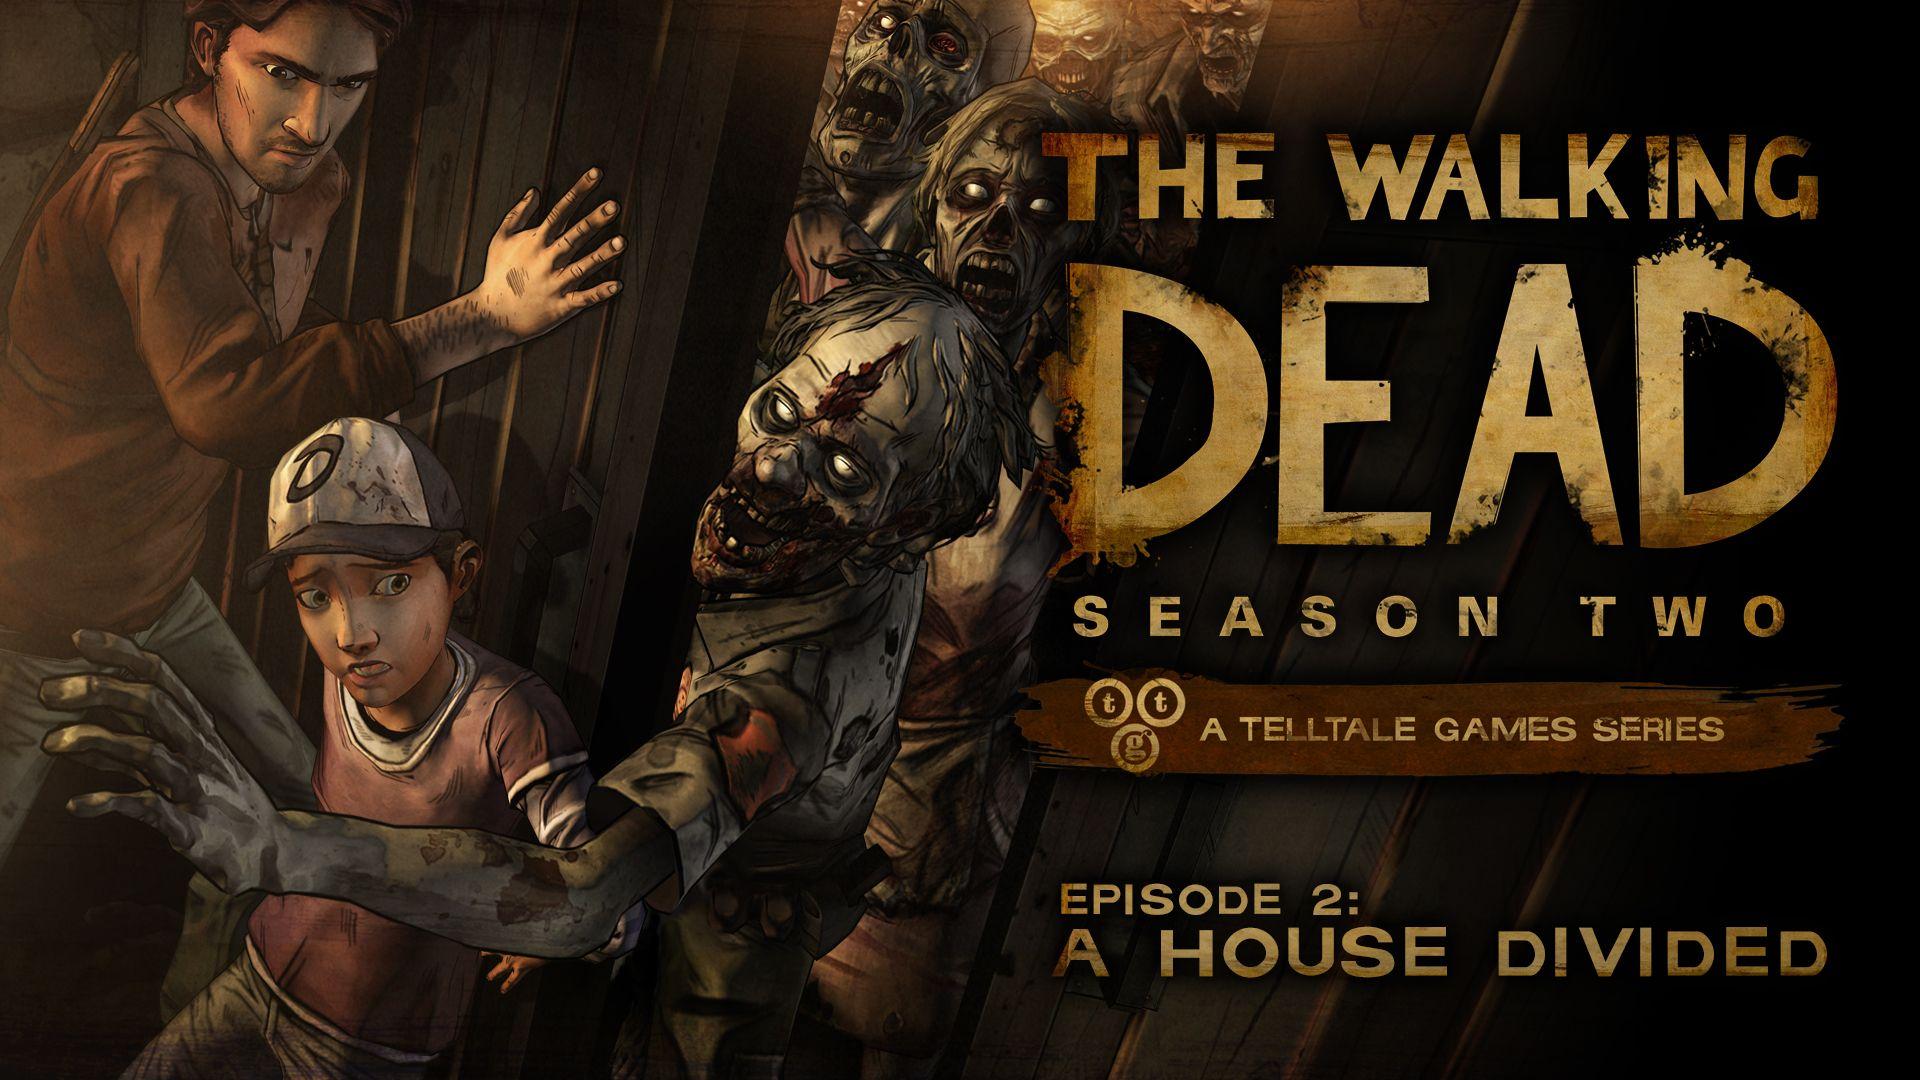 The Walking Dead Season Two Episode Two Wallpaper